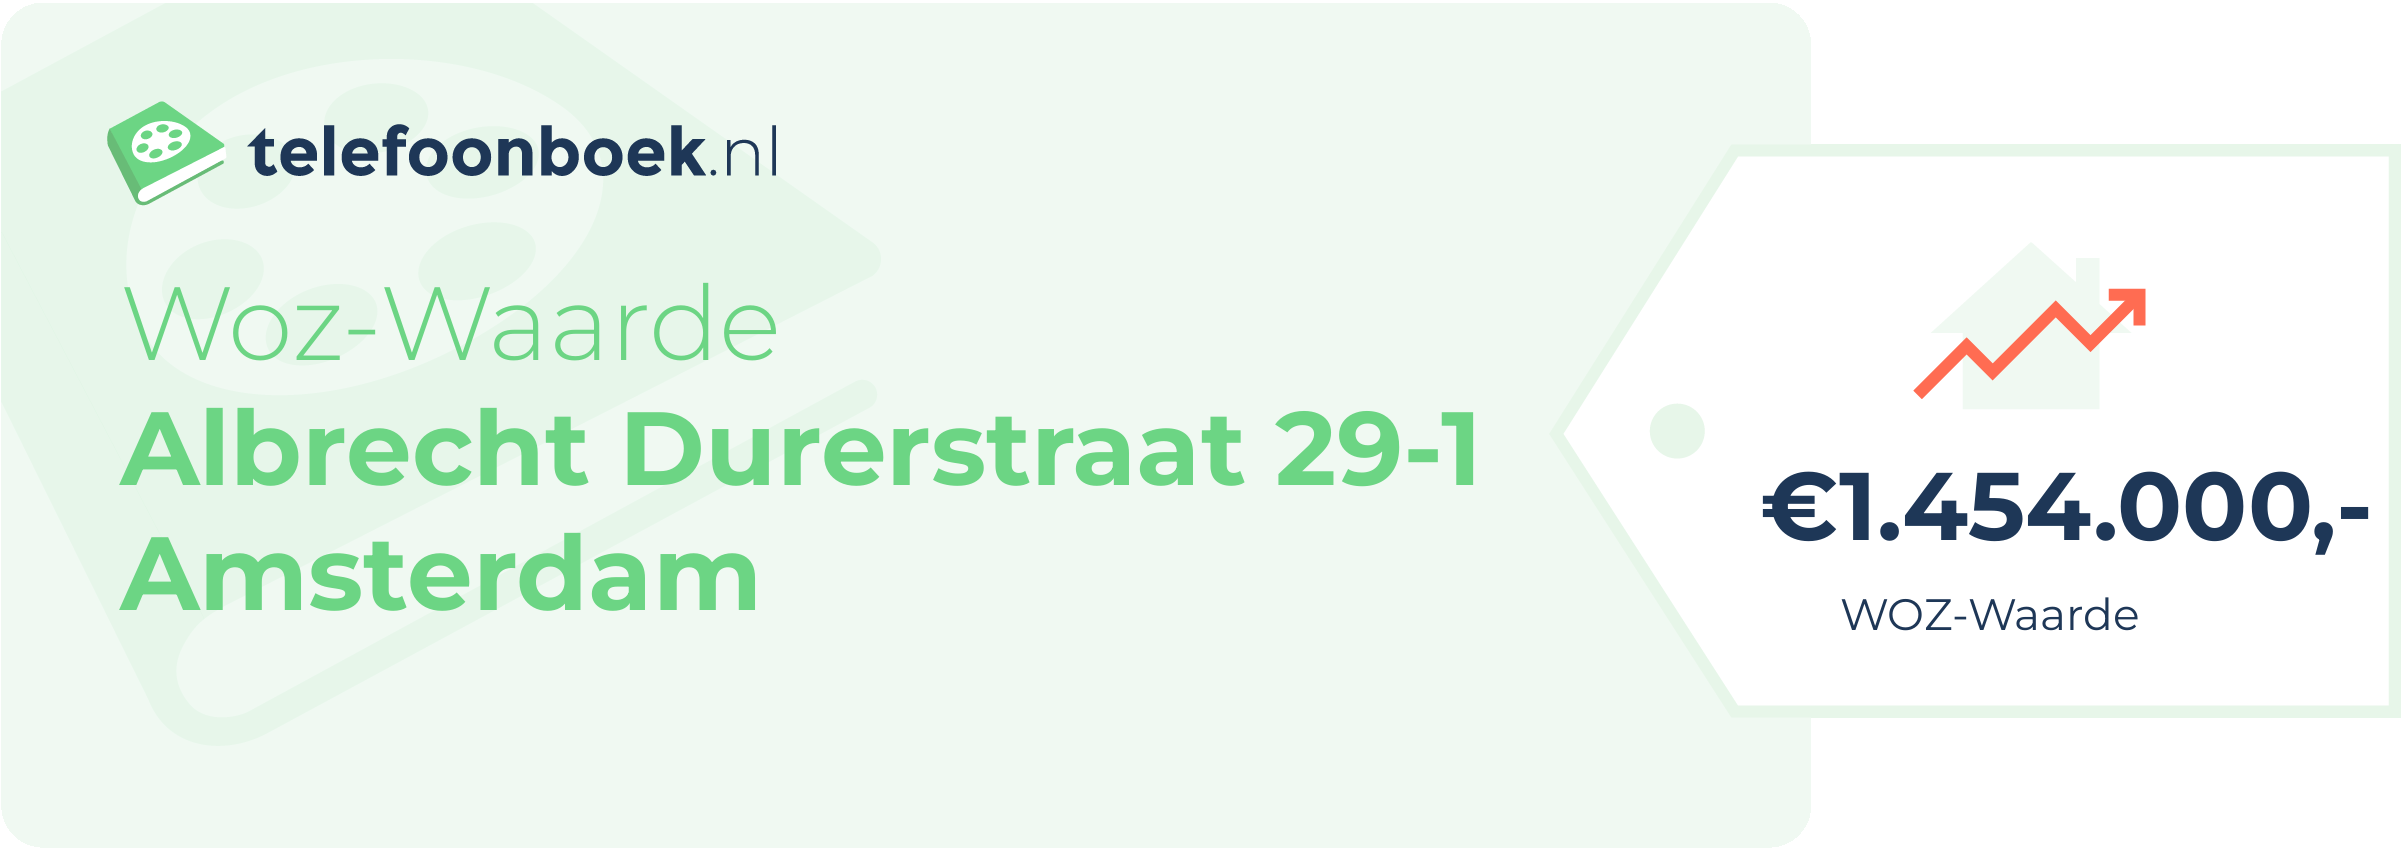 WOZ-waarde Albrecht Durerstraat 29-1 Amsterdam